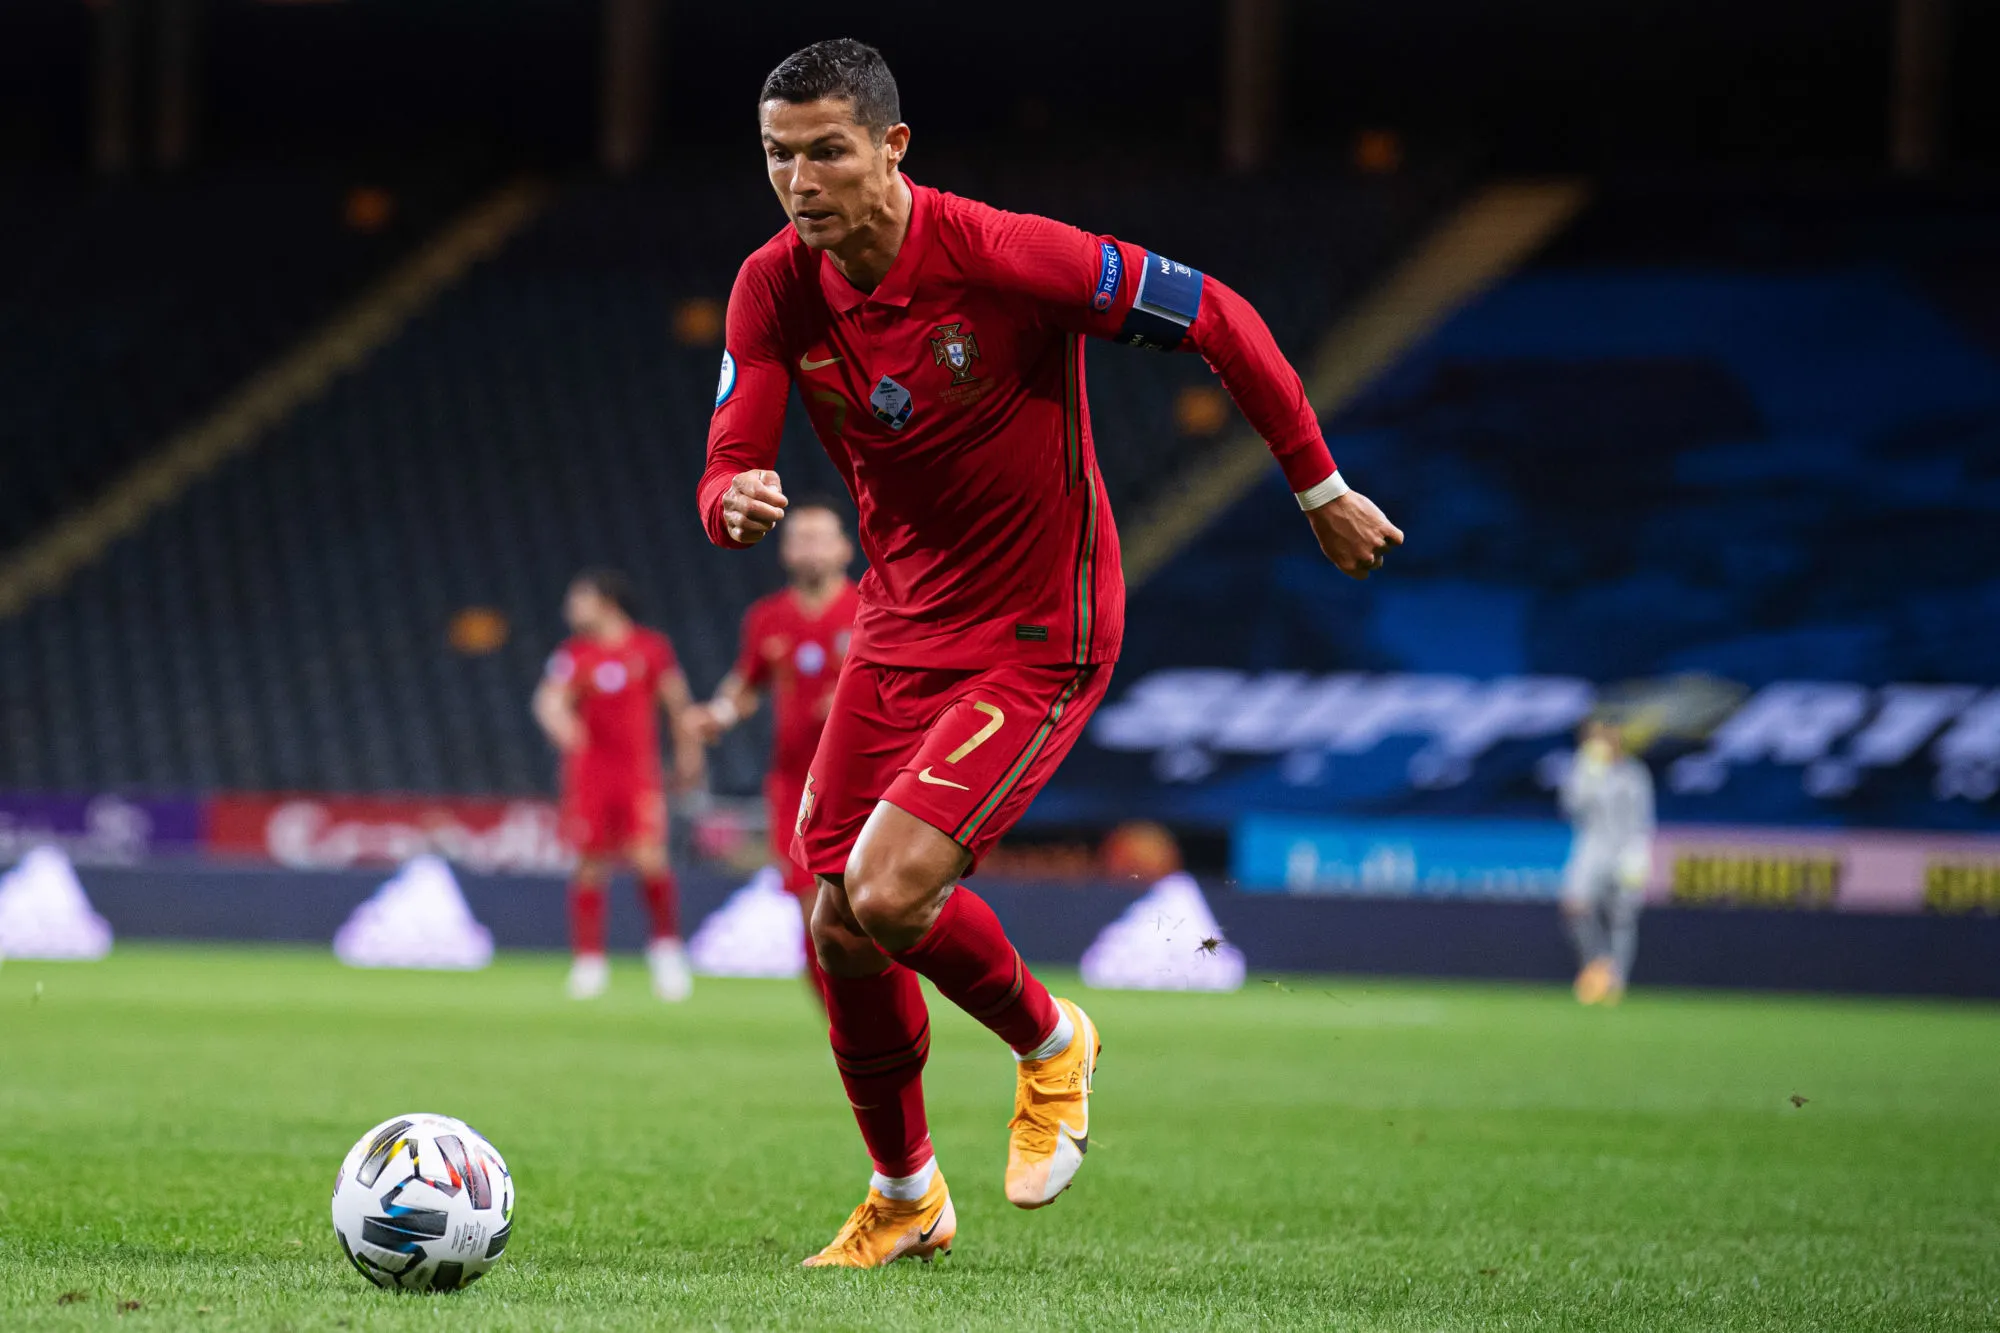 Pronostic Luxembourg Portugal : Analyse, cotes et prono du match des éliminatoires pour la Coupe du monde 2022